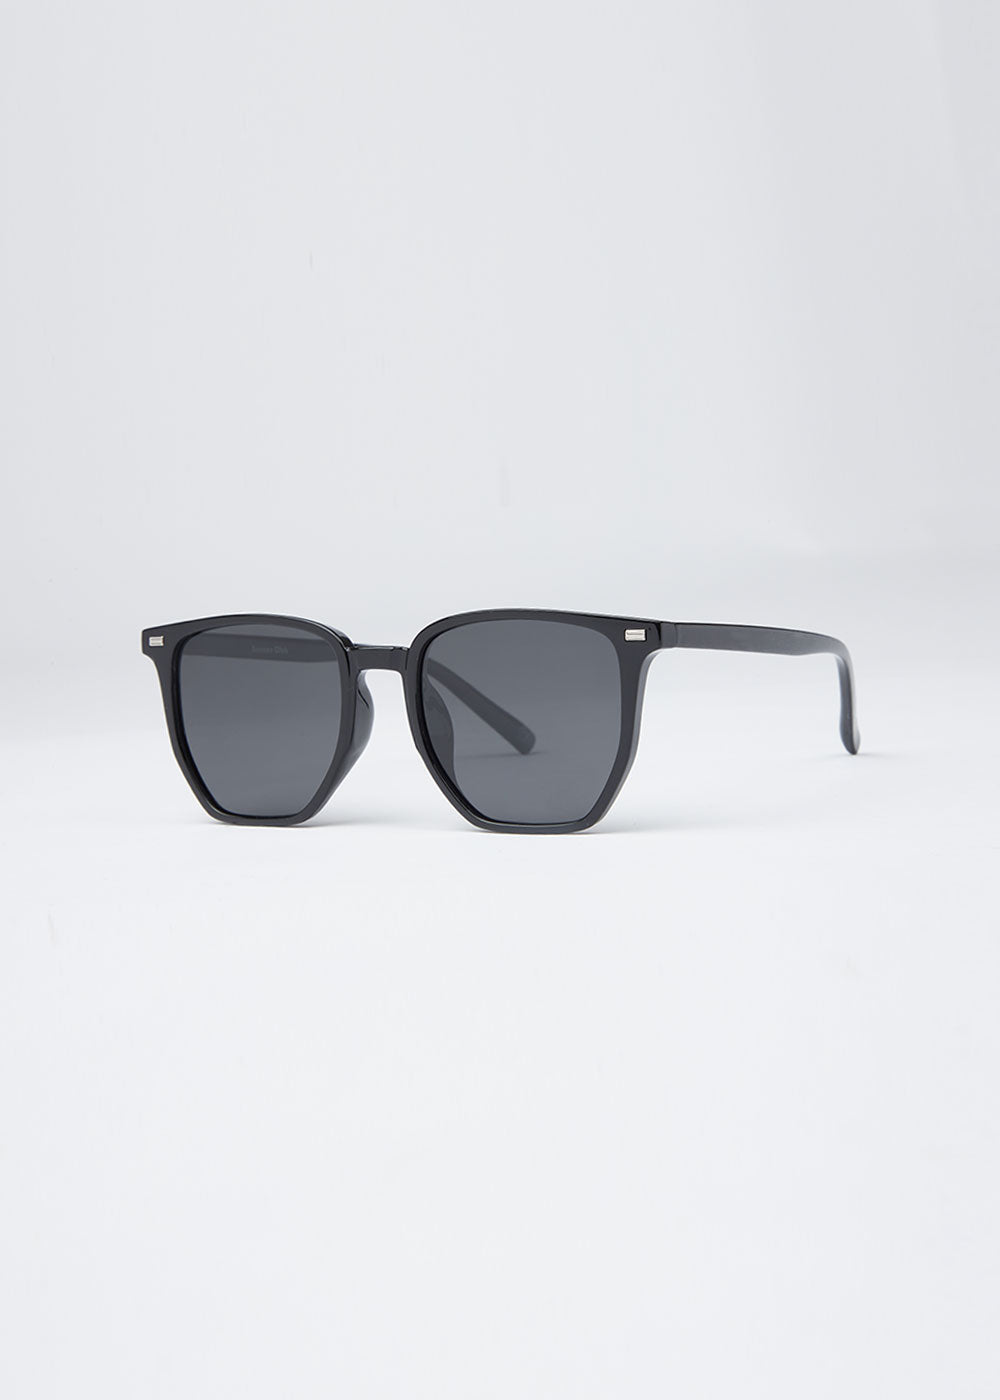 Jet Noir Unisex Square Sunglasses